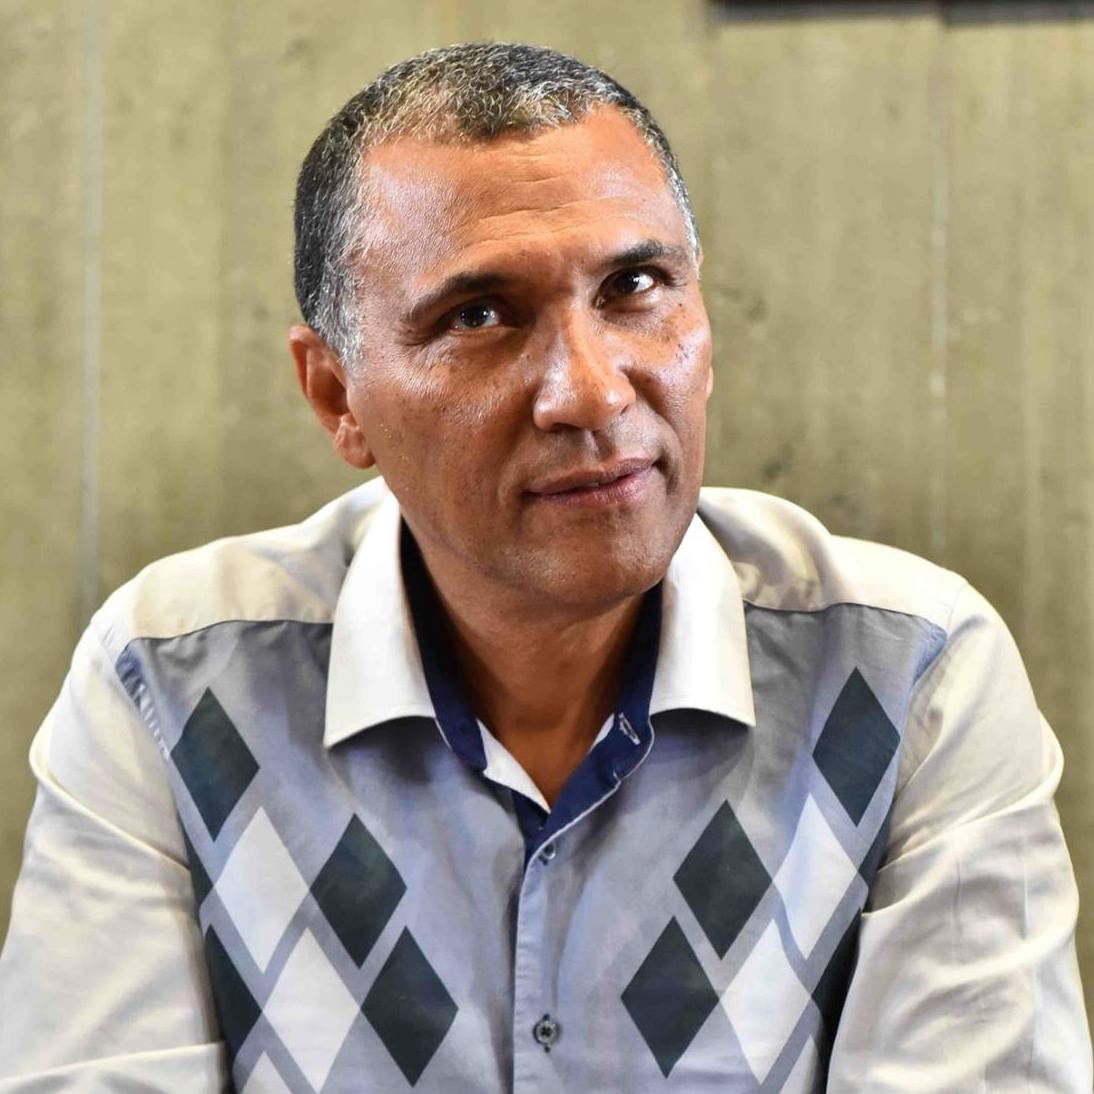 Politique en Guadeloupe: Le maire de Pointe-à-Pitre Jacques Bangou a démissionné